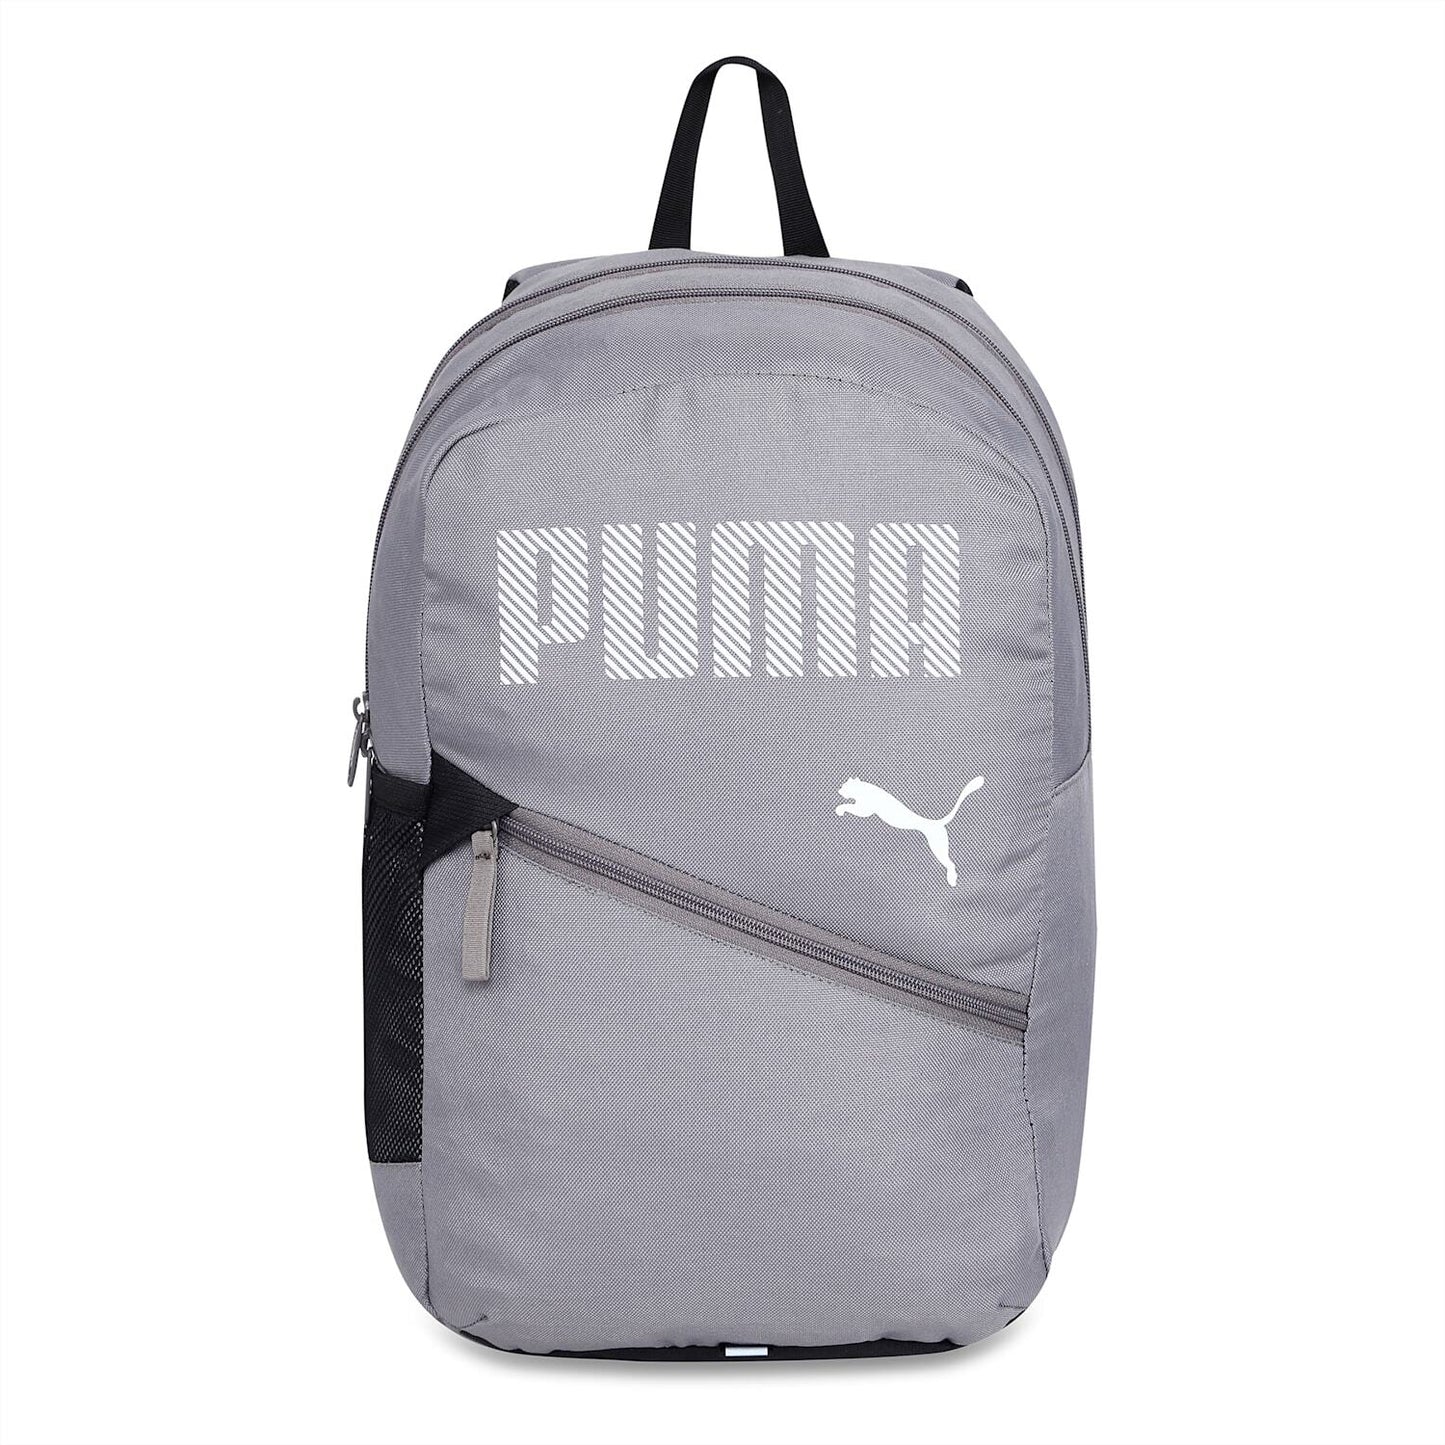 puma grey backpack-076188 04